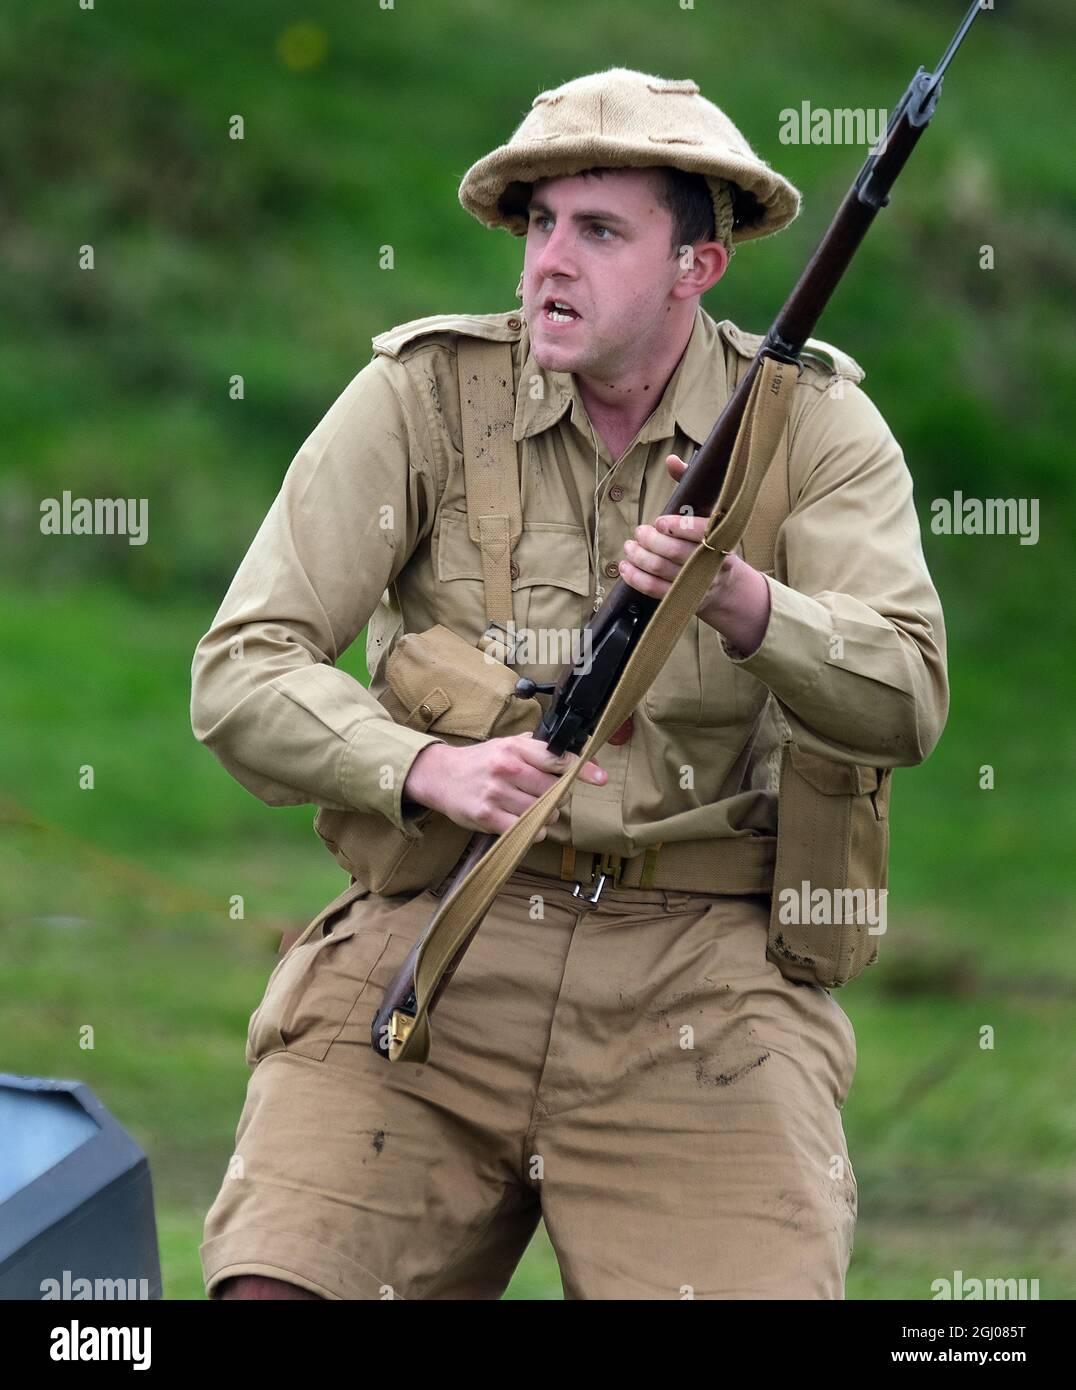 Der Schauspieler ist als britischer Soldat des Zweiten Weltkriegs in Aktion gekleidet. Stockfoto